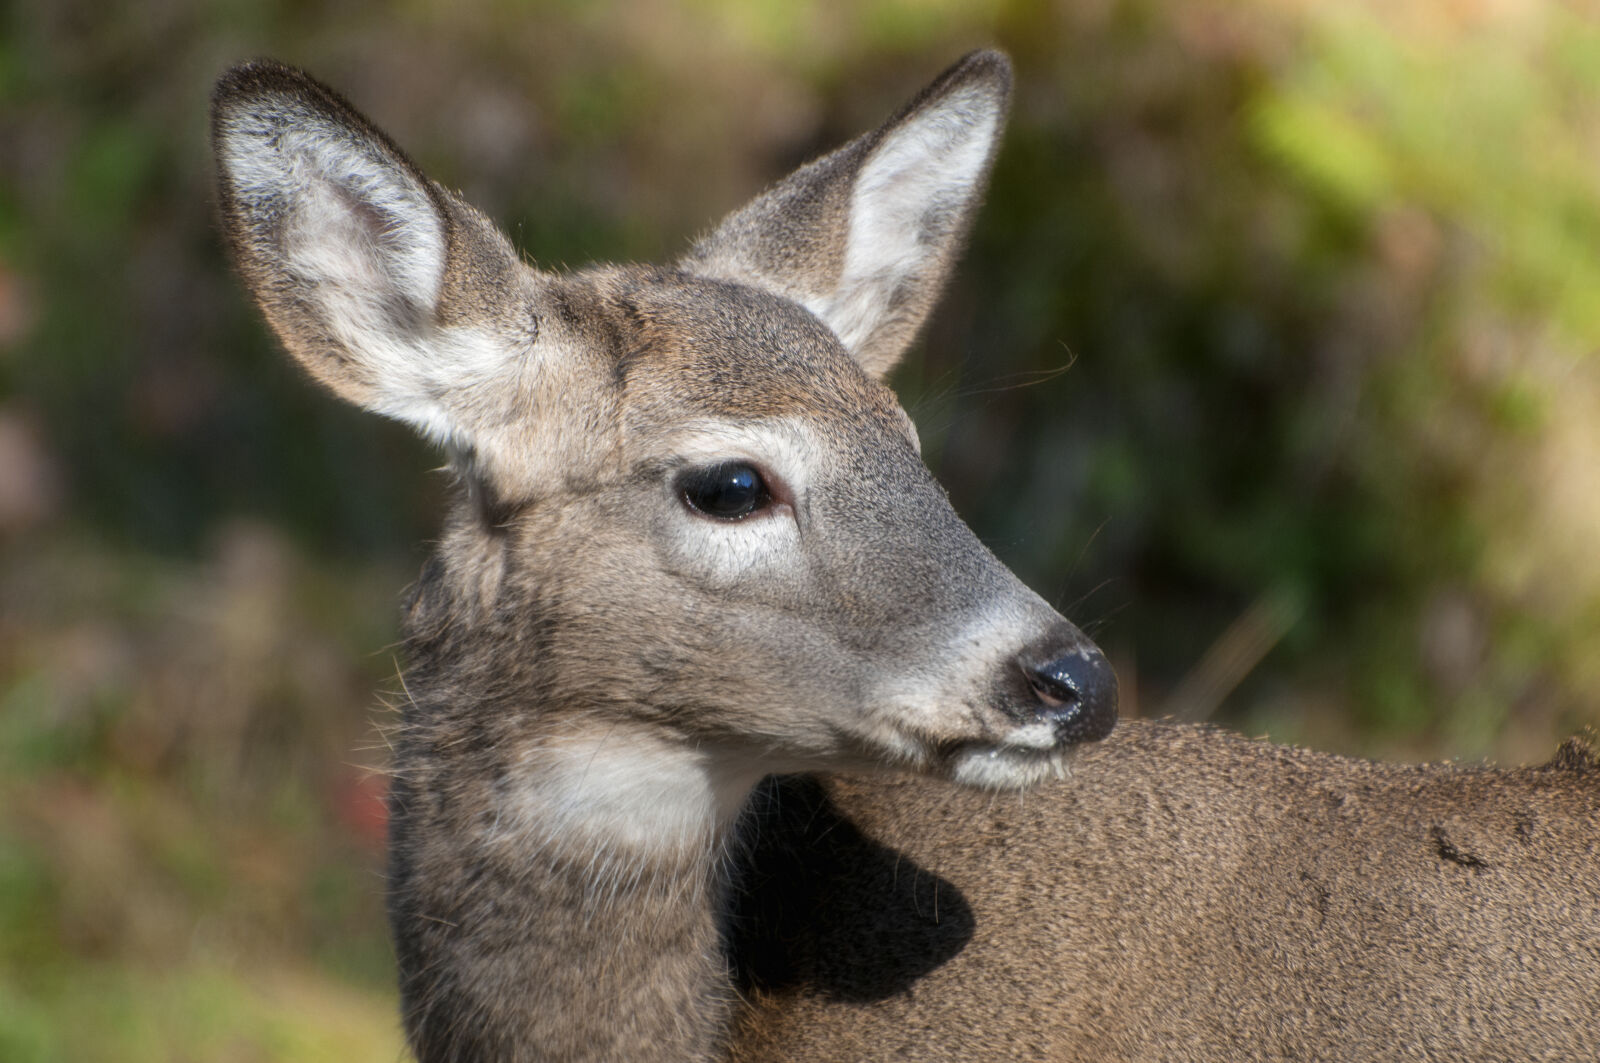 Nikon D300 sample photo. Canada, deer, fur, nature photography